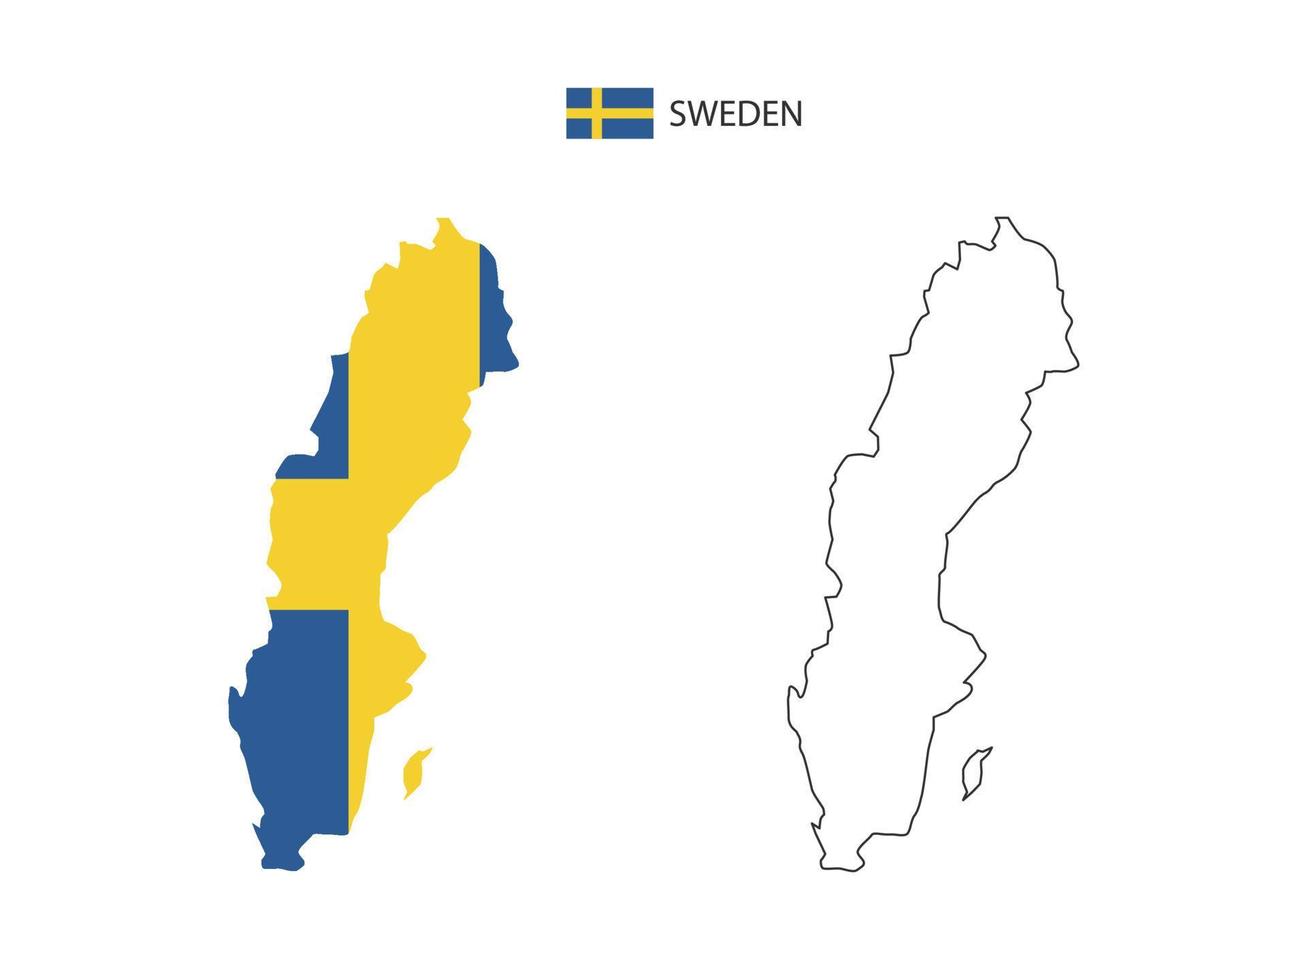 vector de ciudad de mapa de suecia dividido por estilo de simplicidad de contorno. tiene 2 versiones, versión de línea delgada negra y versión de color de bandera de país. ambos mapas estaban en el fondo blanco.